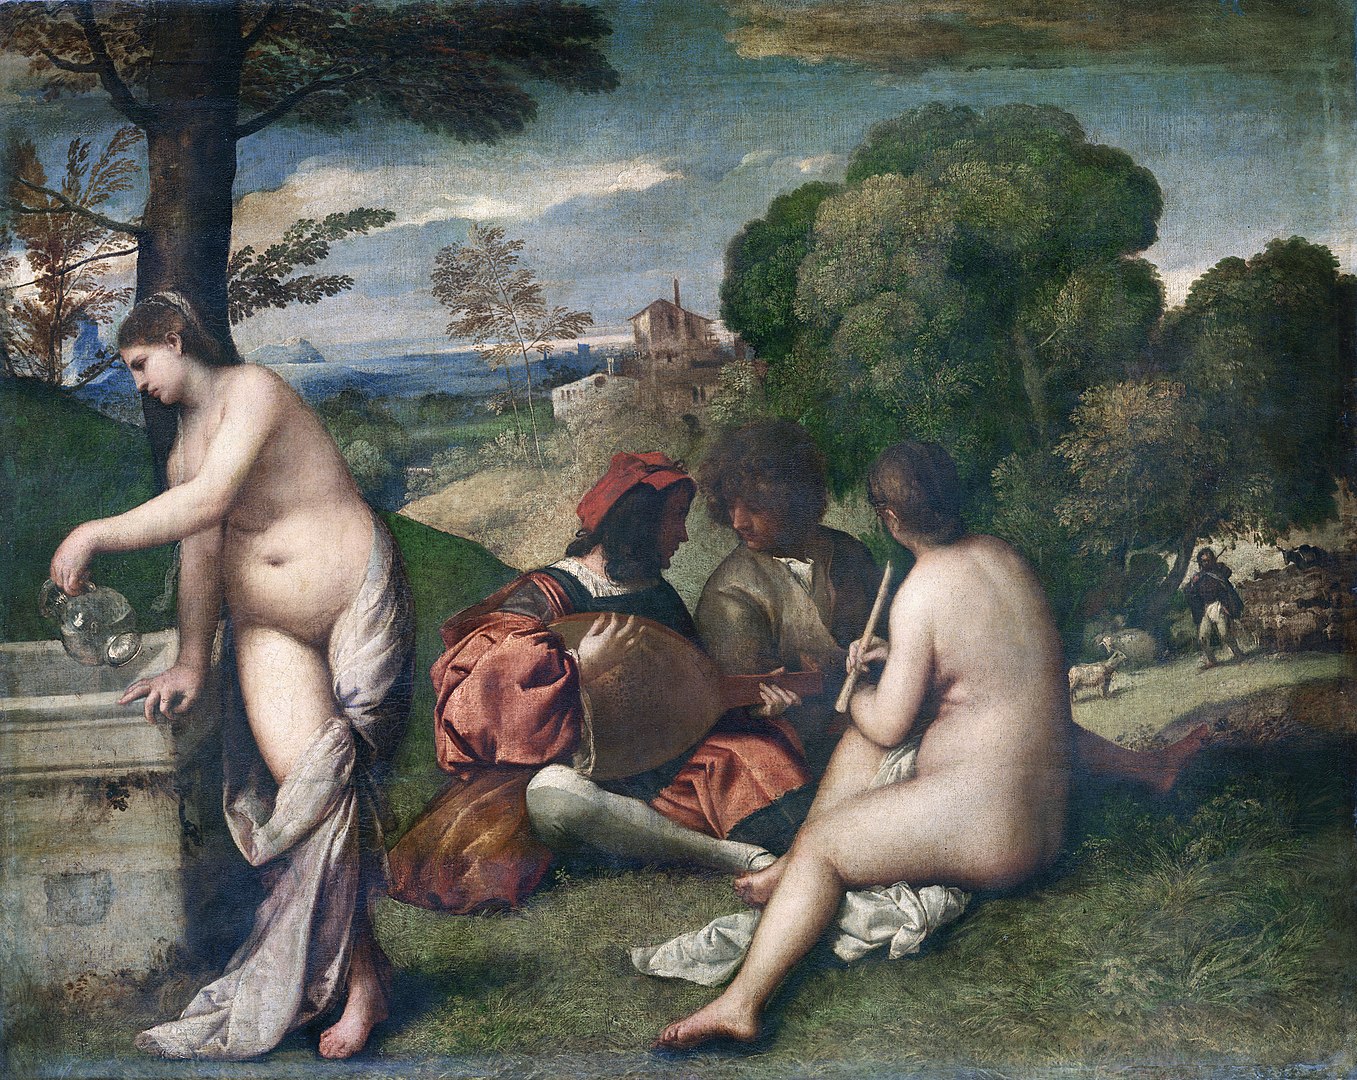 Titian or Giorgione - 16th century